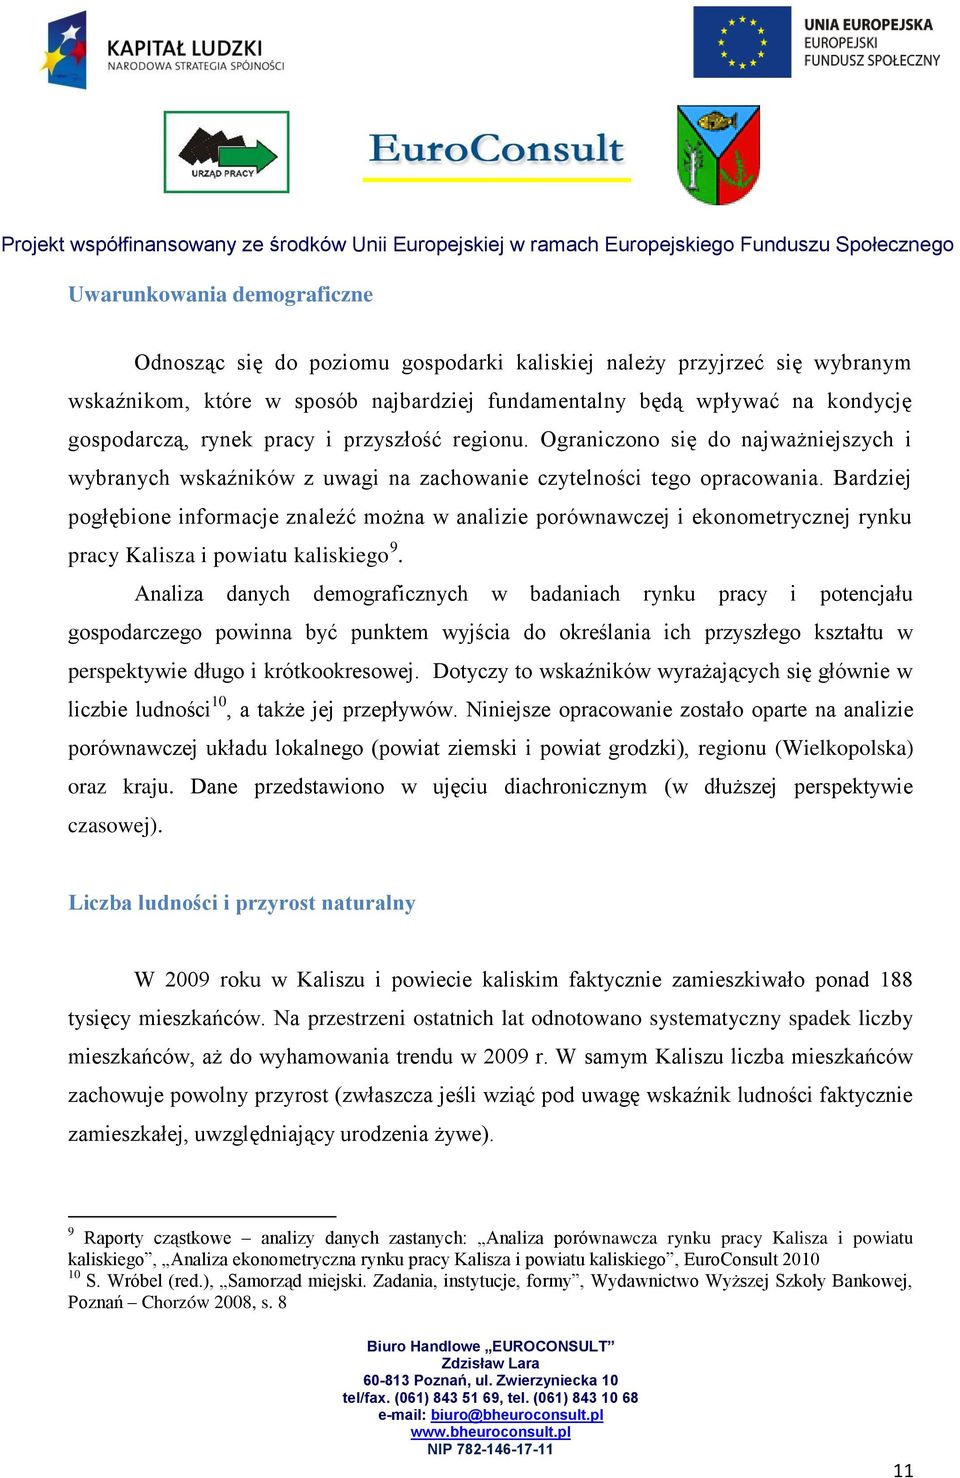 Bardziej pogłębione informacje znaleźć można w analizie porównawczej i ekonometrycznej rynku pracy Kalisza i powiatu kaliskiego 9.